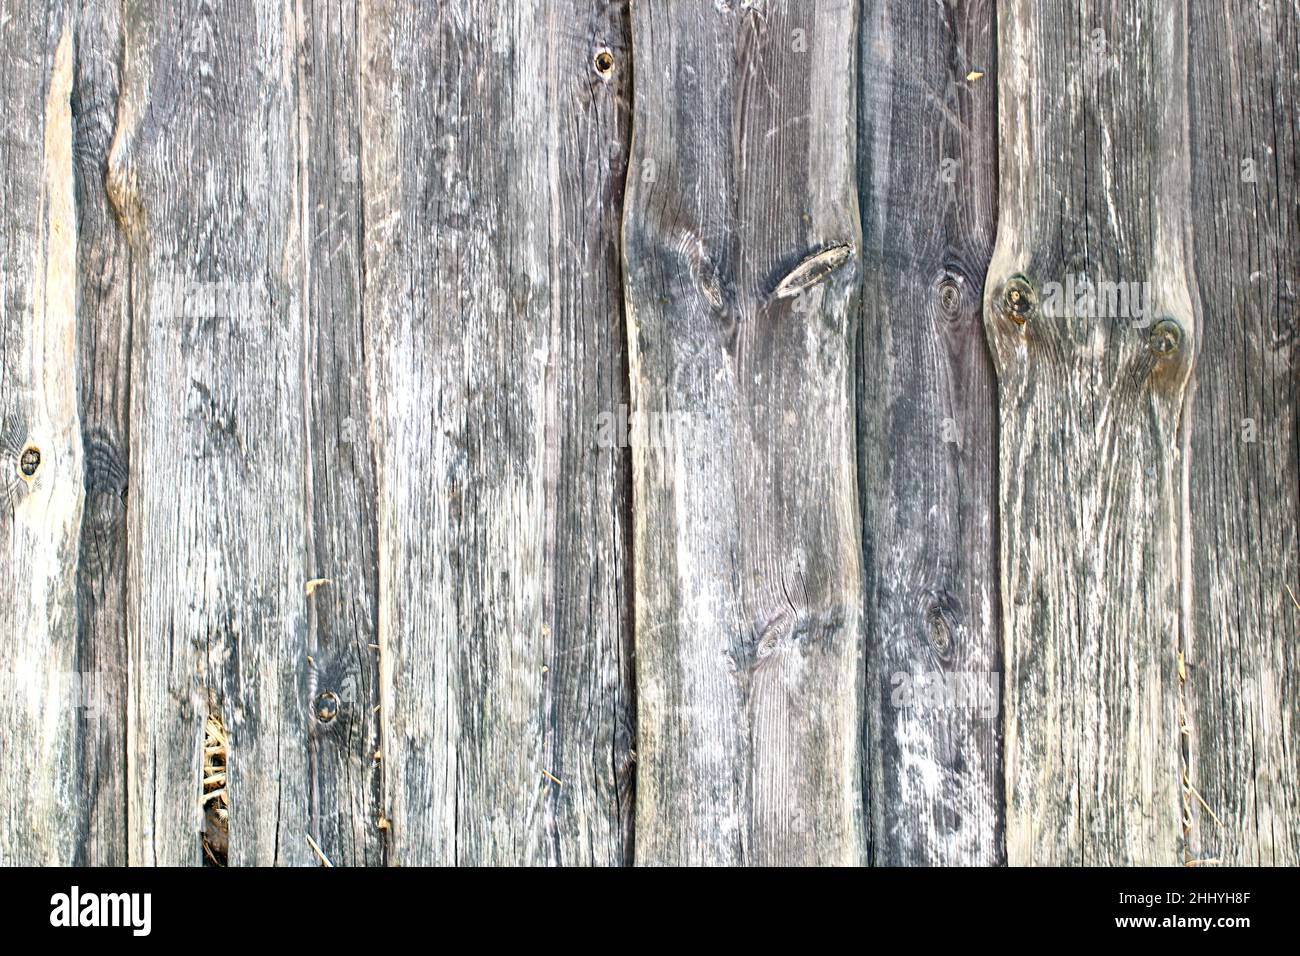 Hintergrund mit Holzstruktur. Nahaufnahme eines alten Holzfragmentes mit verwitterter Oberfläche. Stockfoto